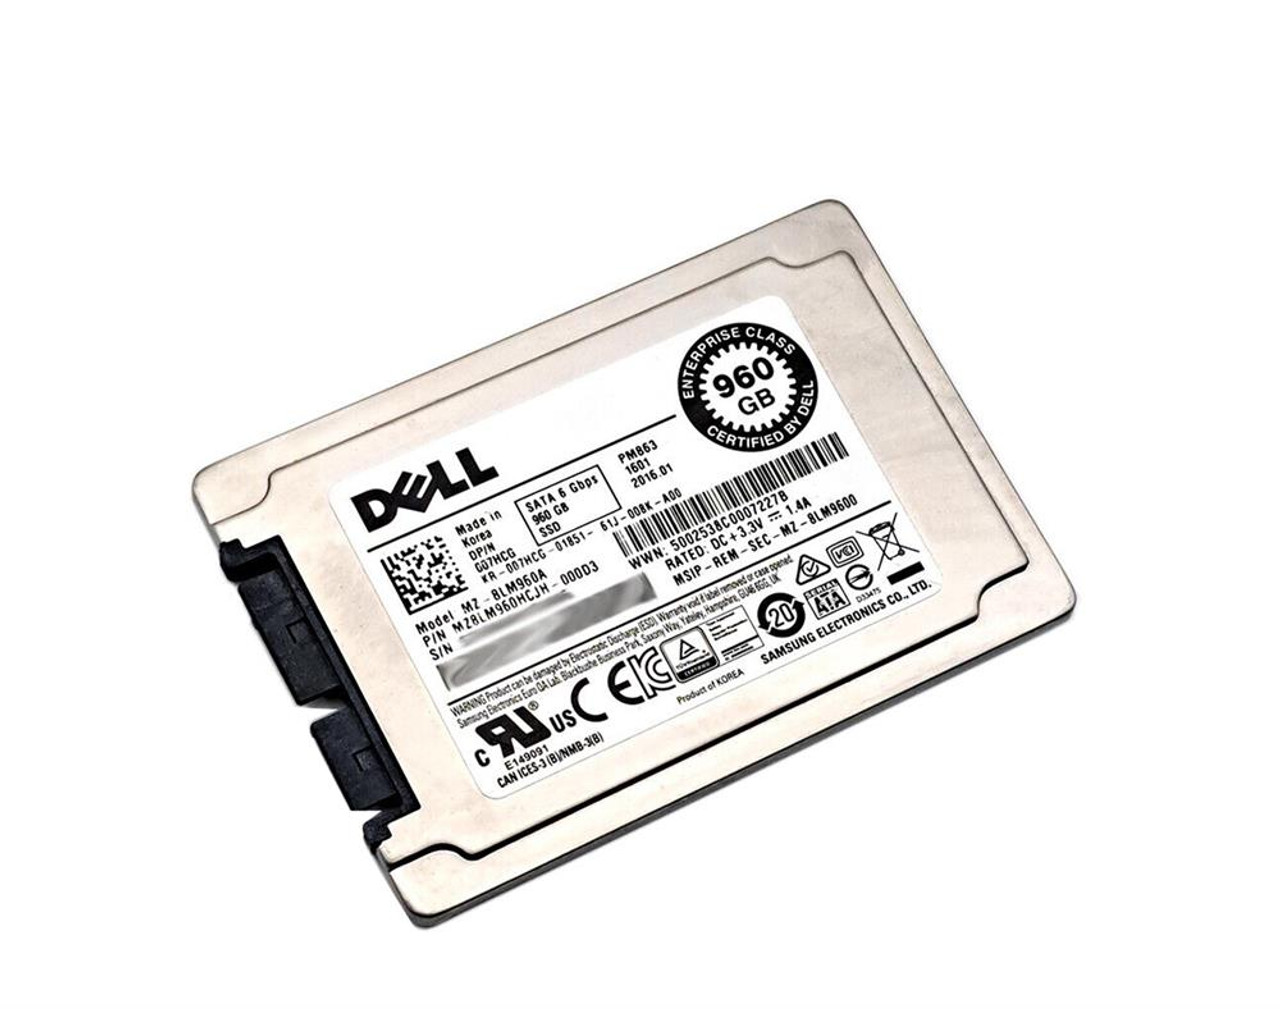 Dell 1.8In Micro SATA 960GB SSD 6GB S USATA Solid State Drive